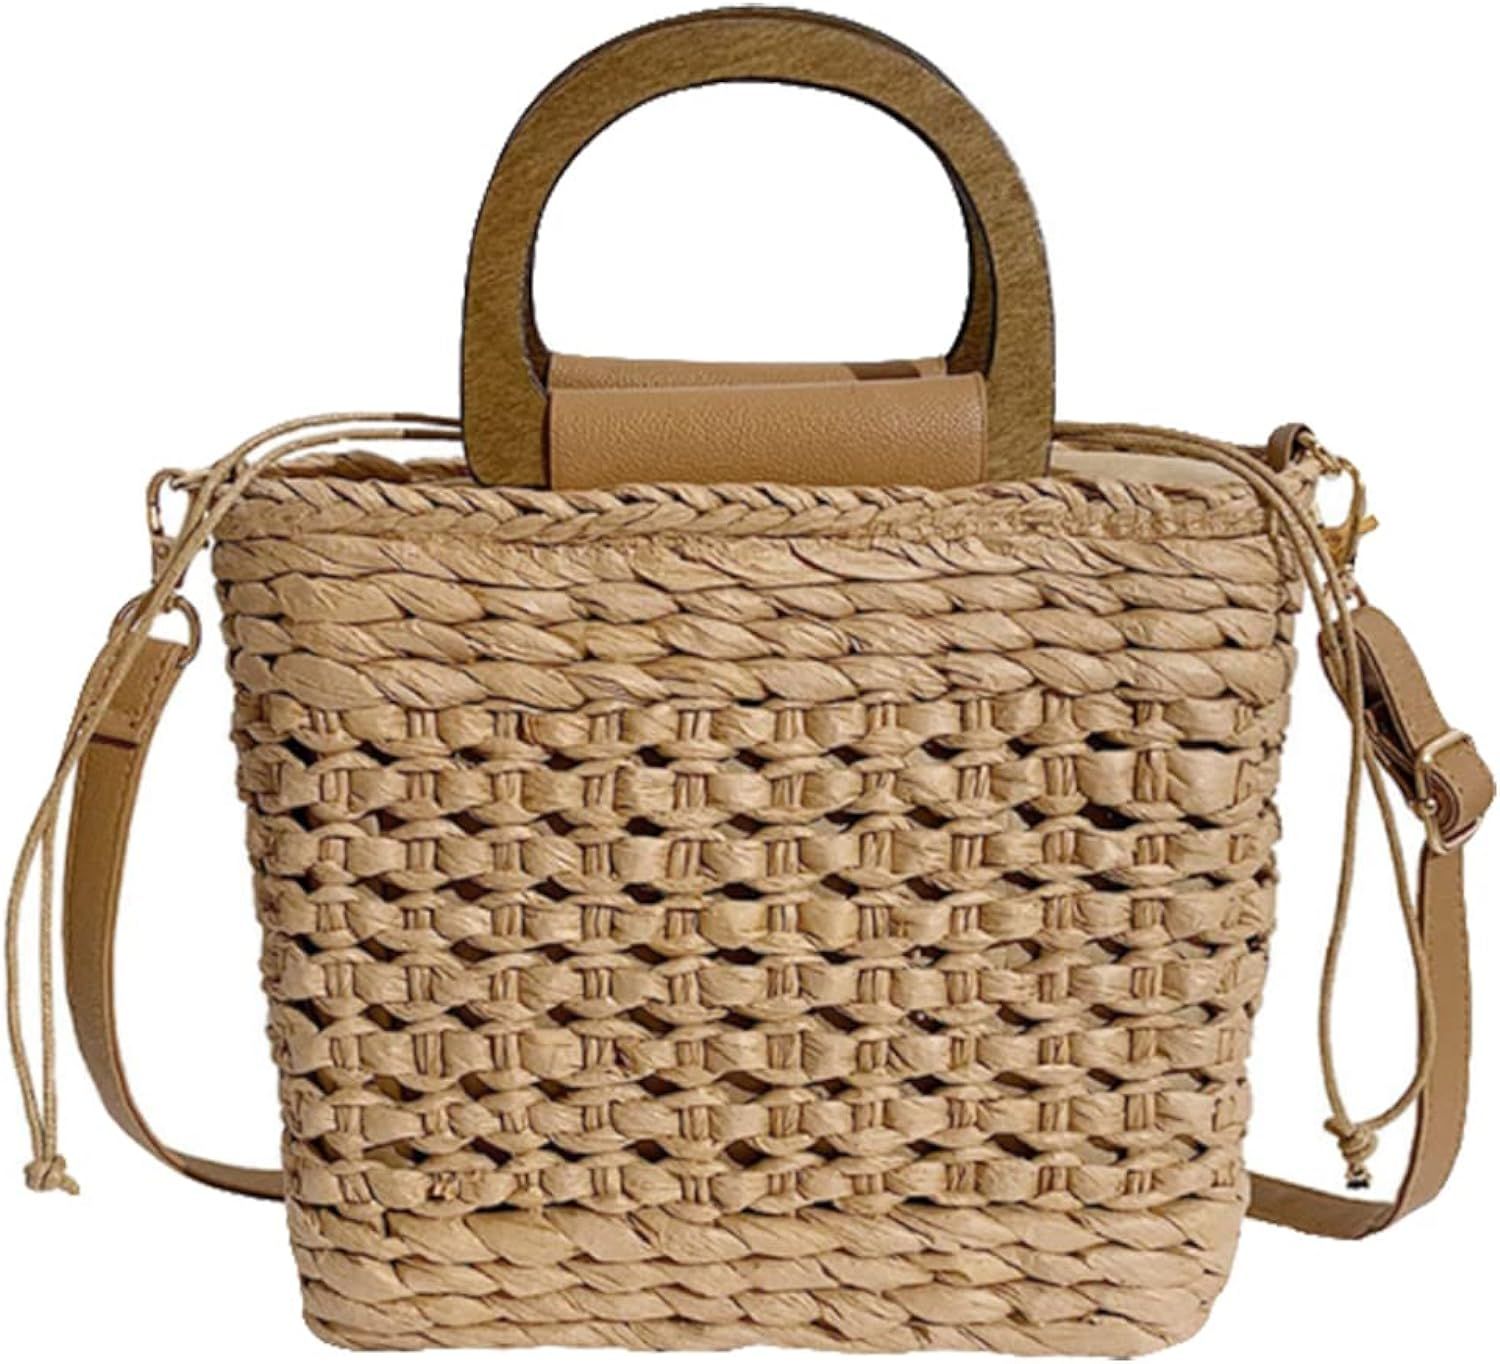 Straw Bag Tote Bag Women Stylish Beach Straw Tote Bag High Capacity Fashion Handbag Tote Bag for Wom | Amazon (US)